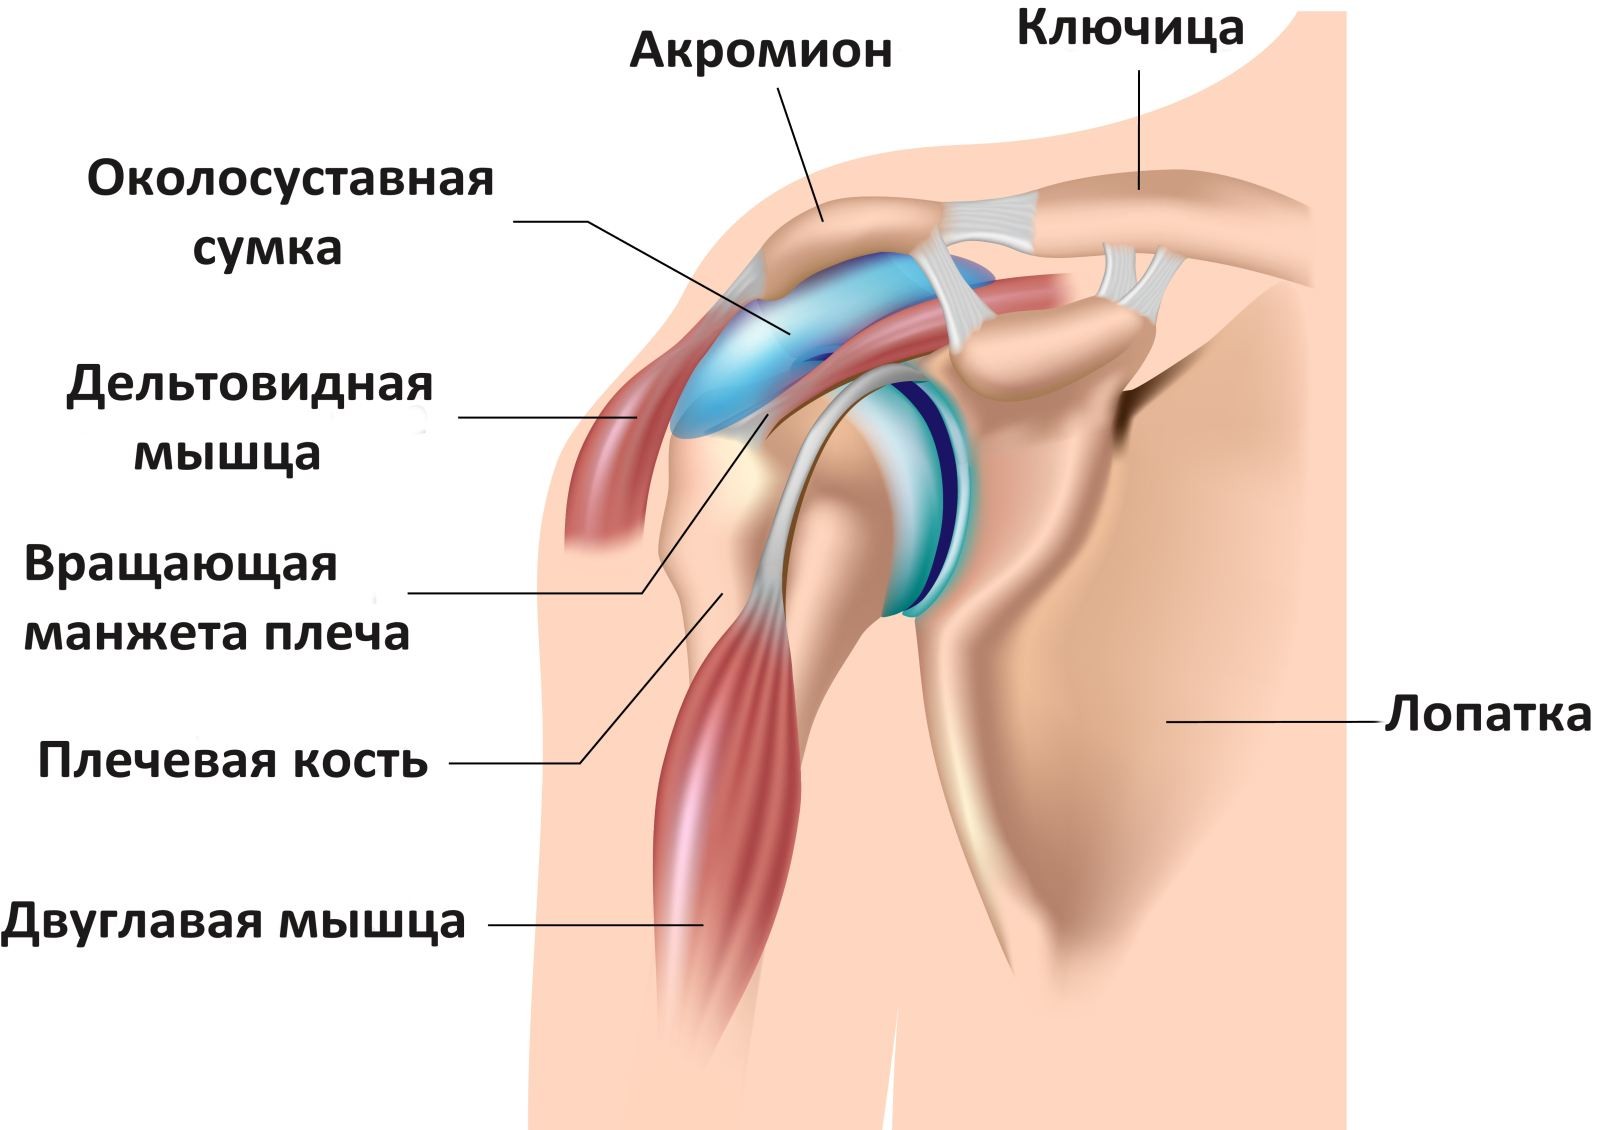 Сумка плечевого сустава